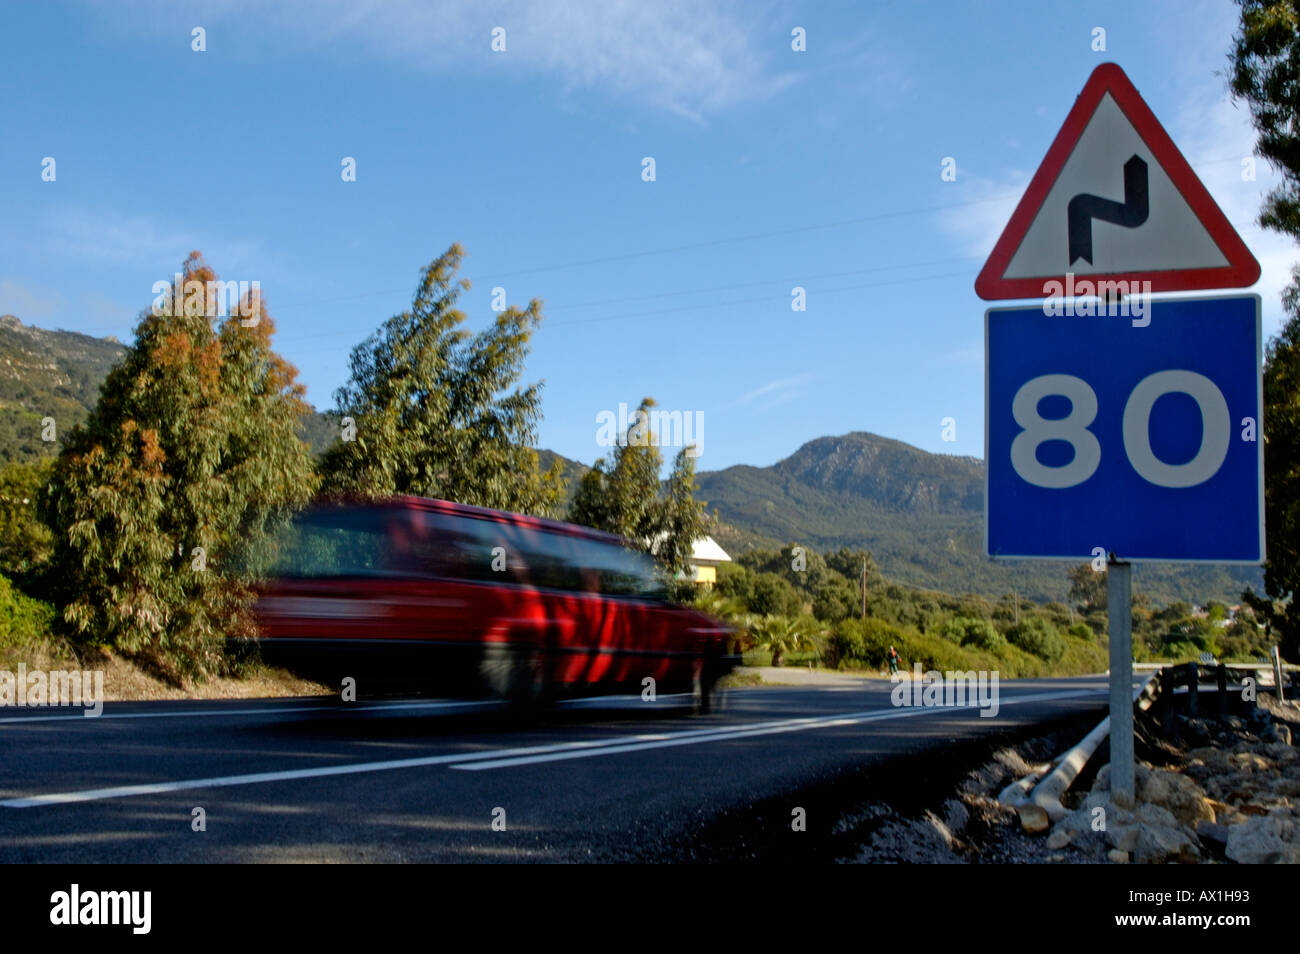 Voiture roulant sur une route avec des panneaux routiers de la limite de vitesse à 80 km/h et d'avertissement de courbes pour la route, Espagne Banque D'Images